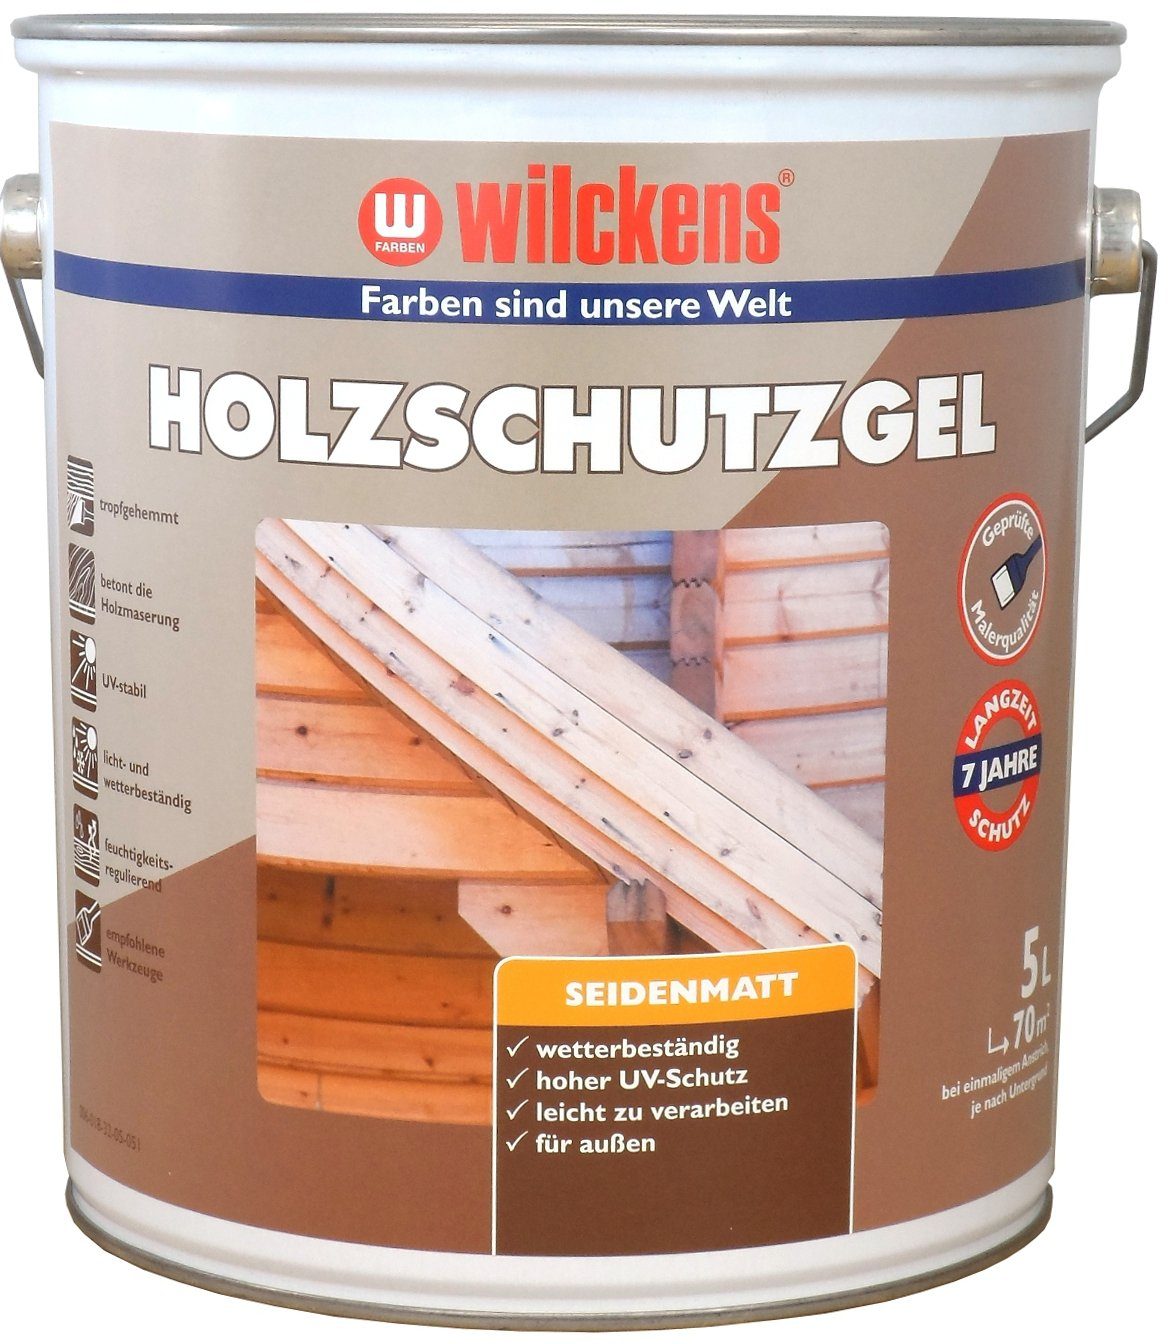 Holzschutz-Gel Holzschutzlasur, Palisander Farben Liter Wilckens 5